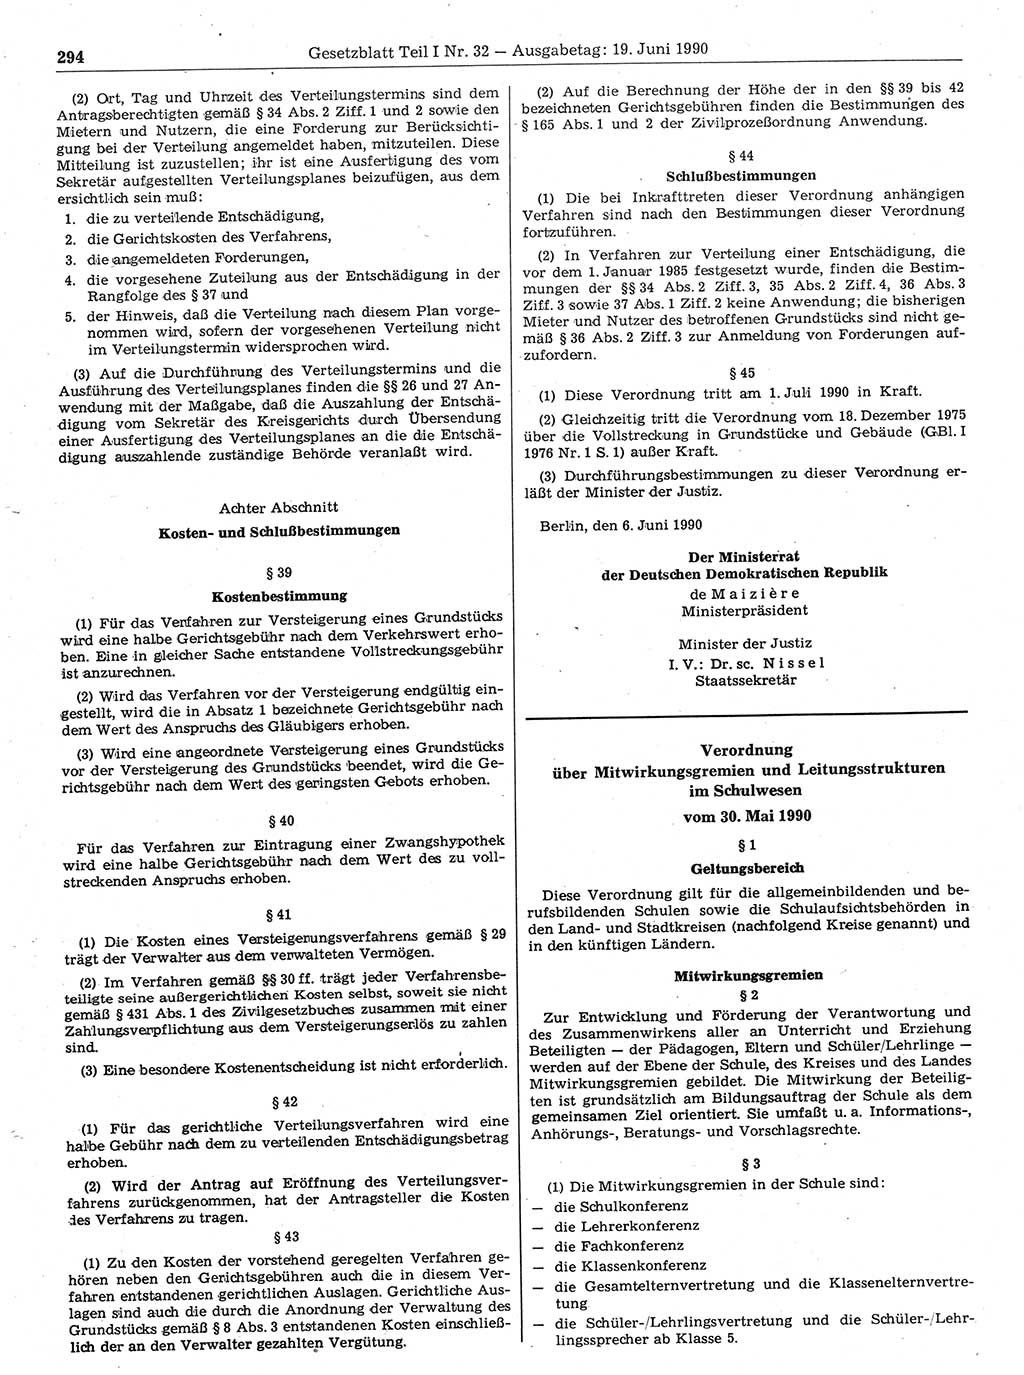 Gesetzblatt (GBl.) der Deutschen Demokratischen Republik (DDR) Teil Ⅰ 1990, Seite 294 (GBl. DDR Ⅰ 1990, S. 294)